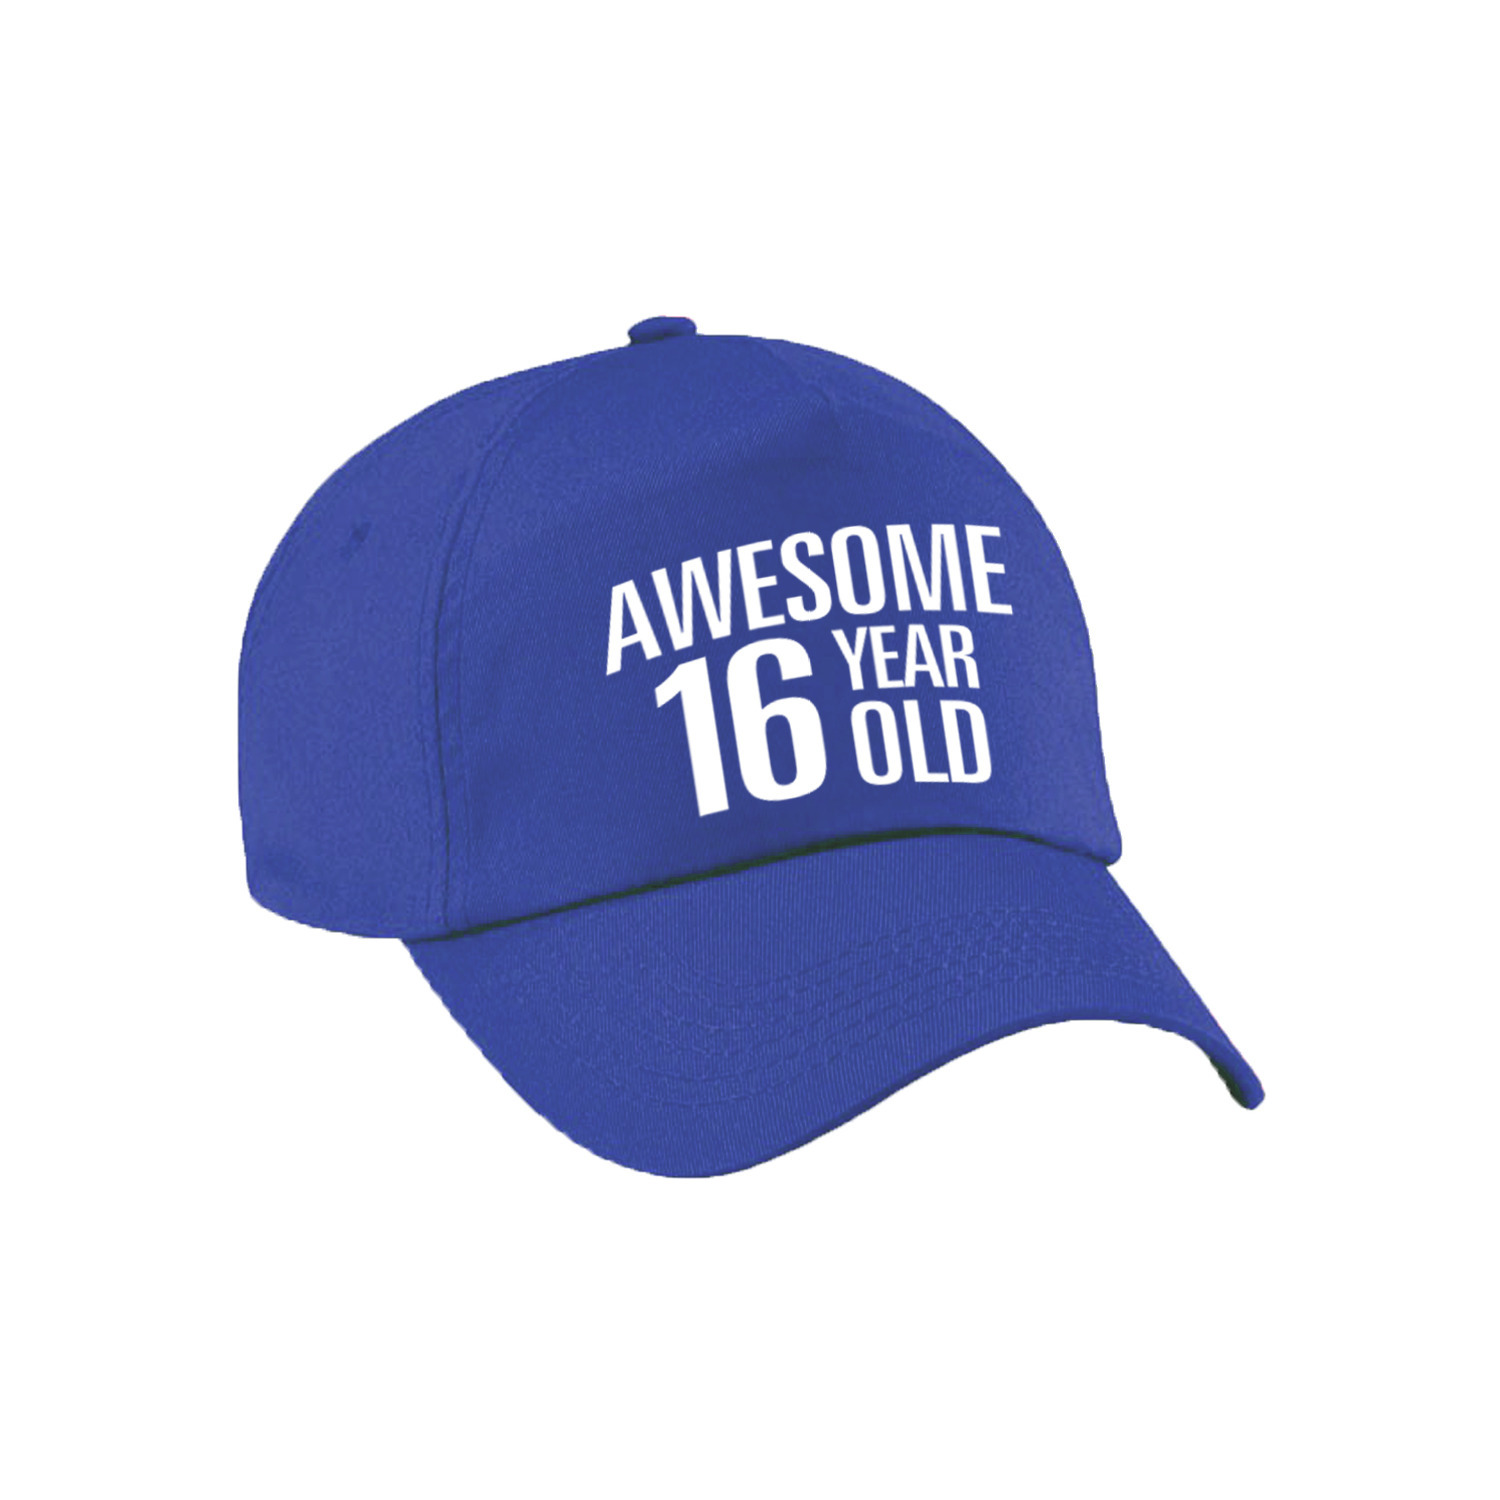 Awesome 16 year old verjaardag pet-cap blauw voor dames en heren